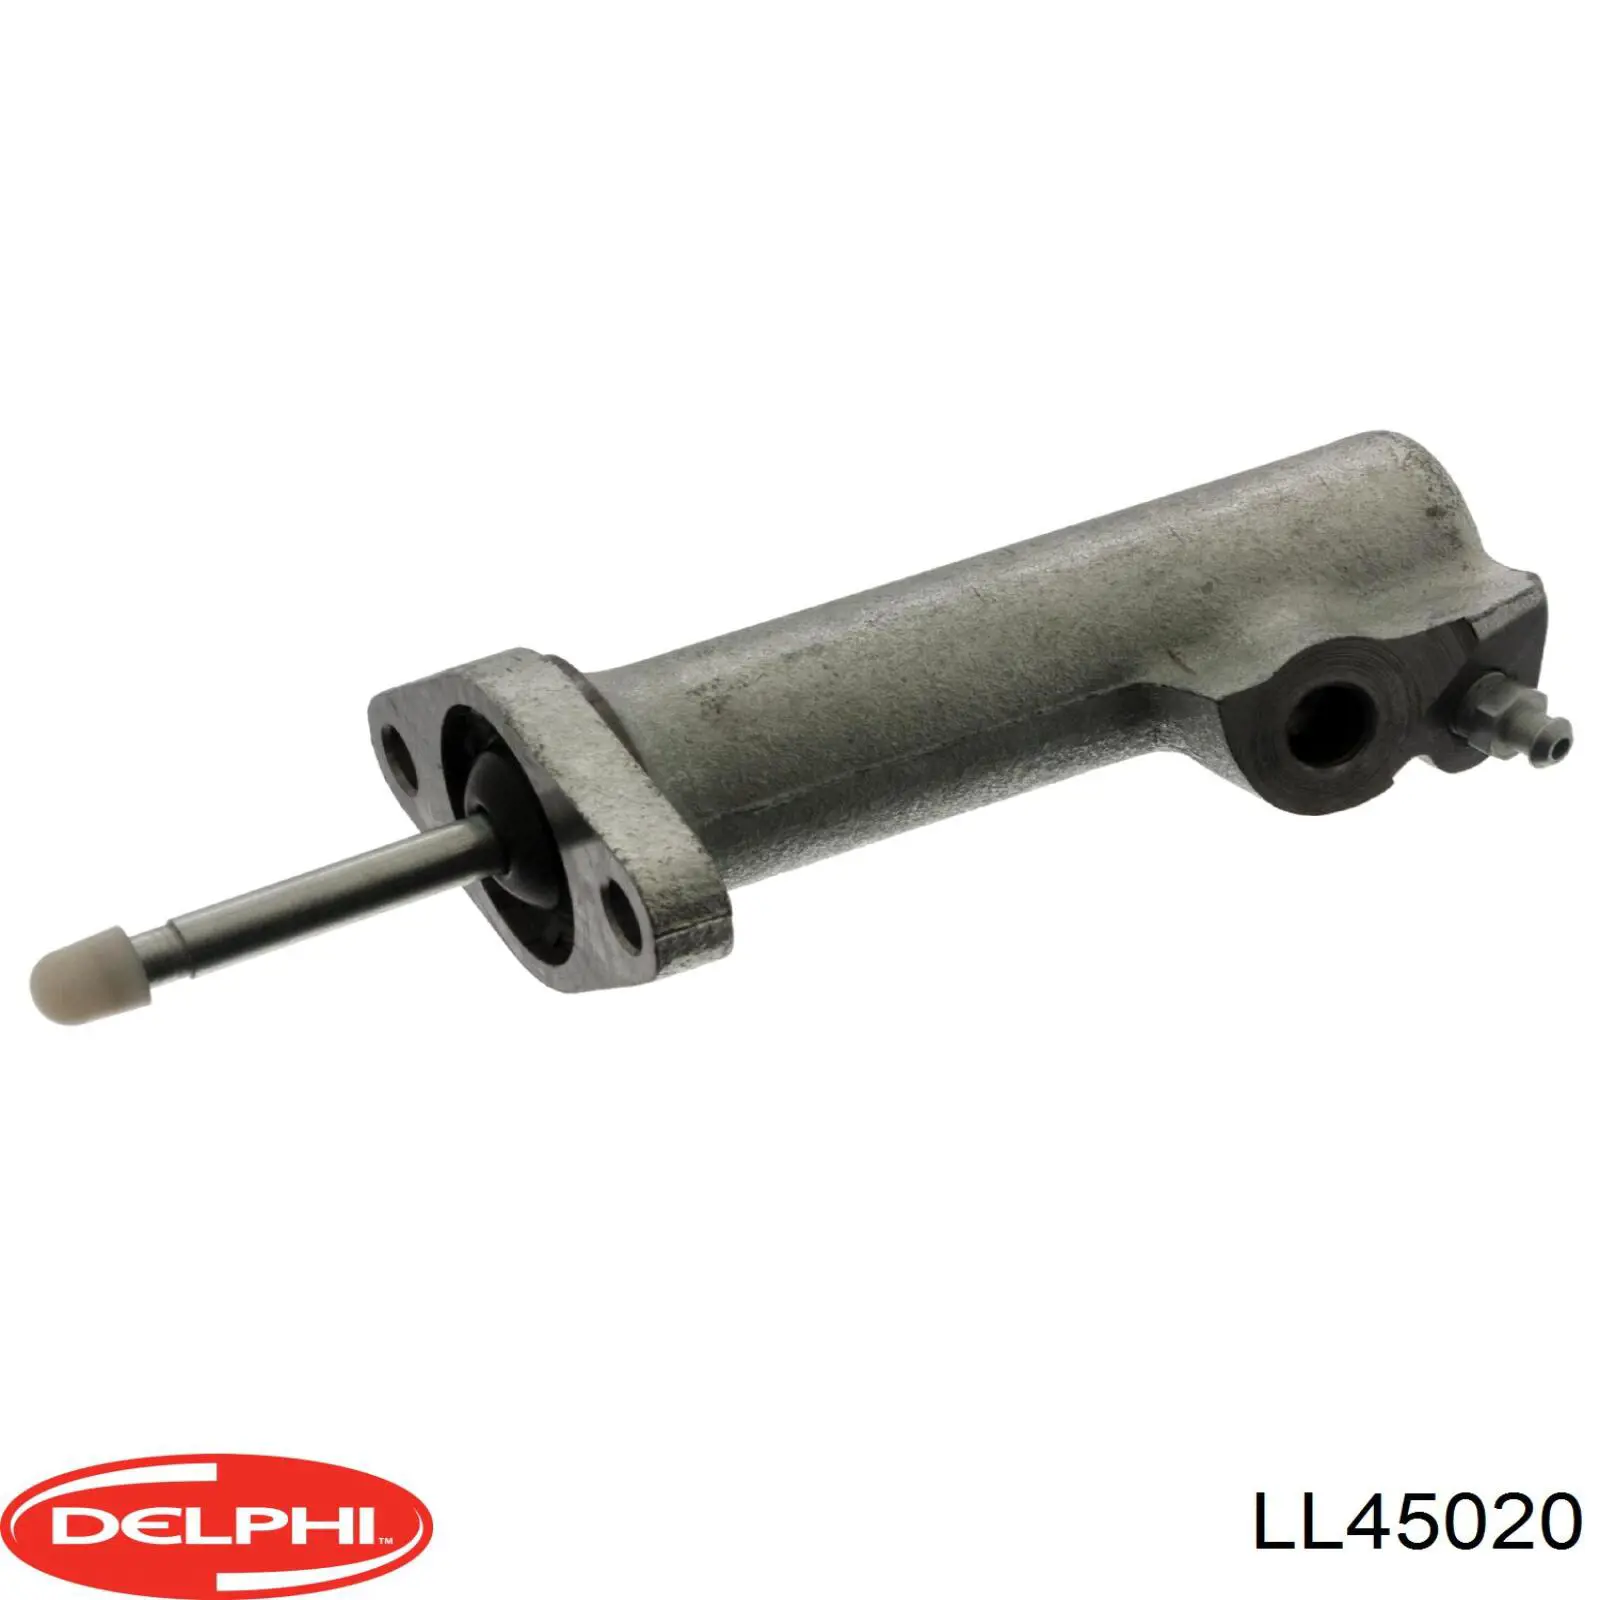 Цилиндр сцепления рабочий Delphi LL45020